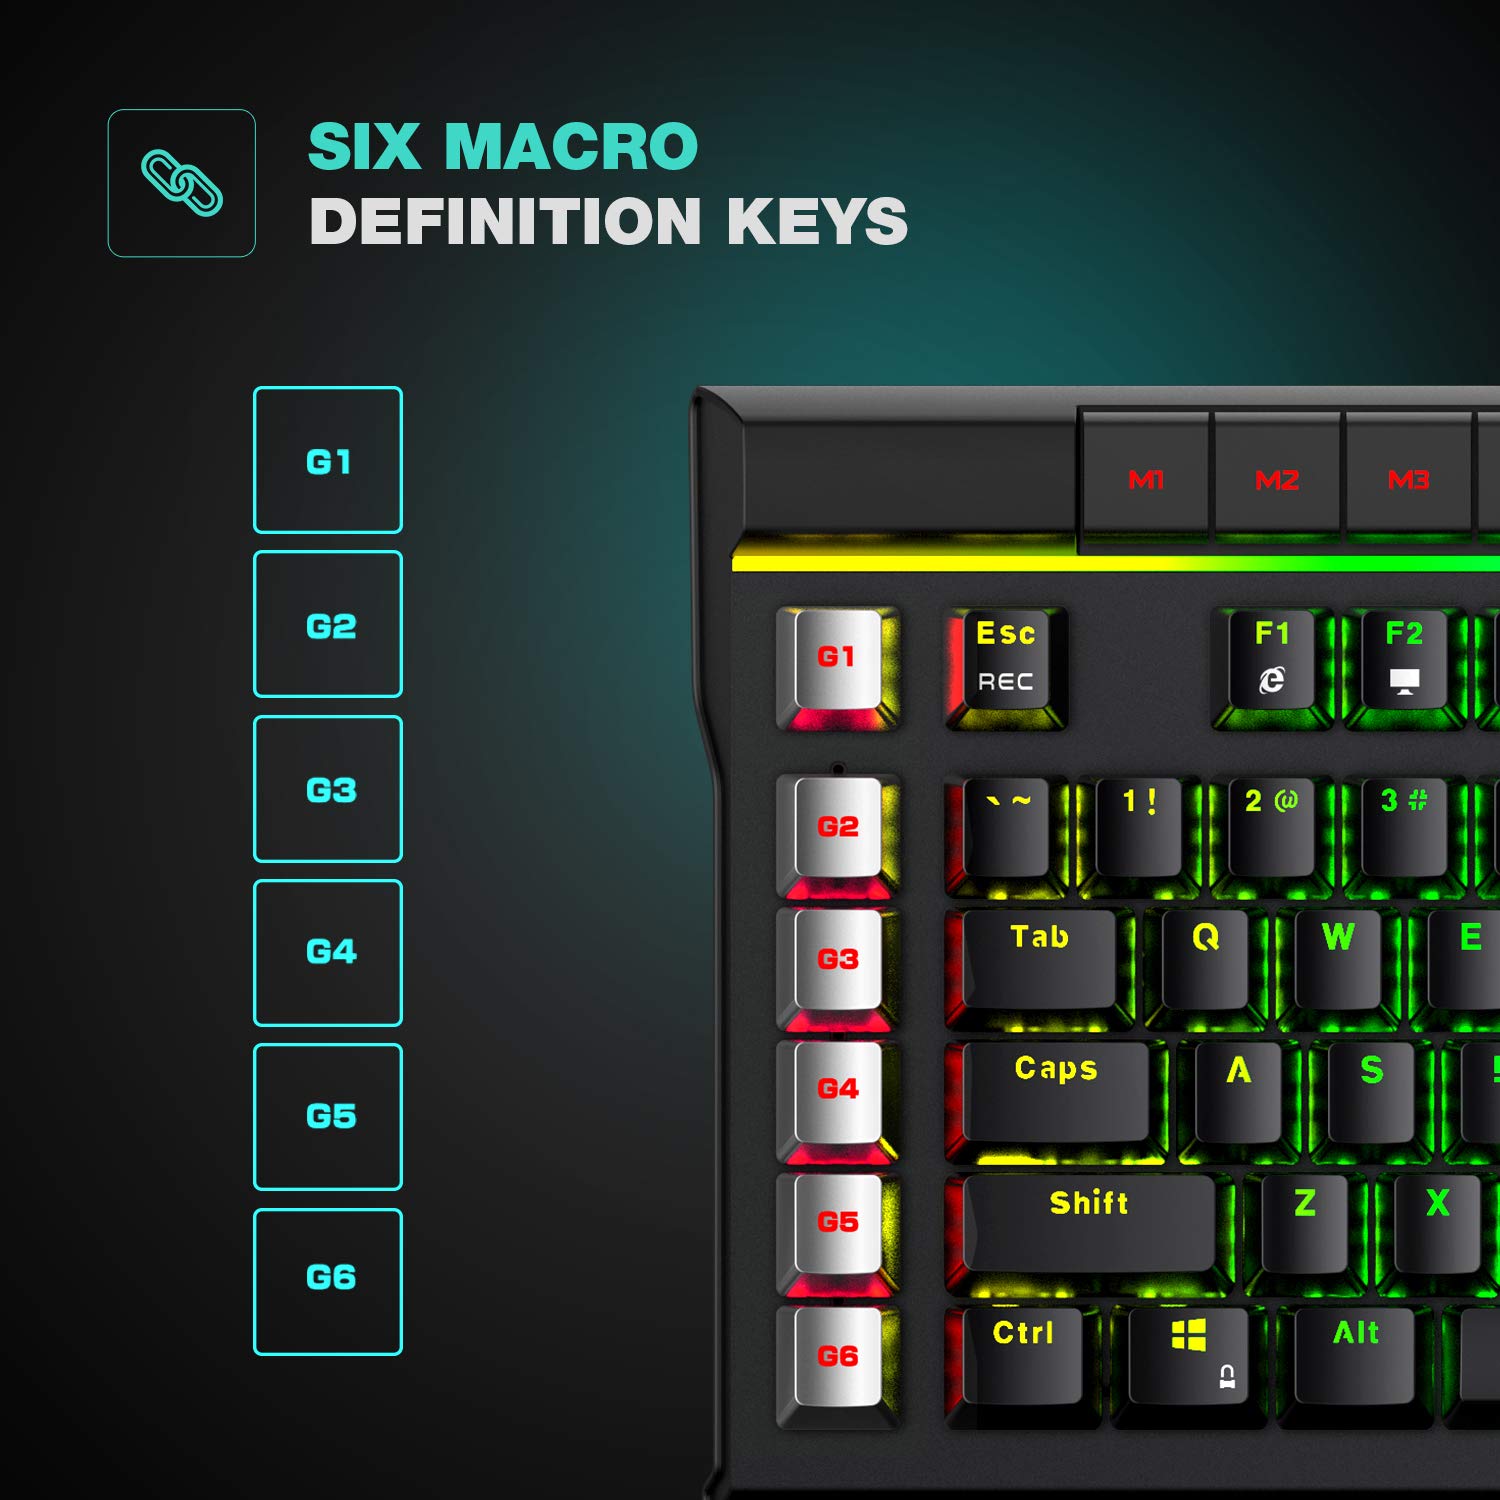 KB462Lメカニカルキーボード、取り外し可能なリストレスト、RGBバックライト、マクロボタン付き